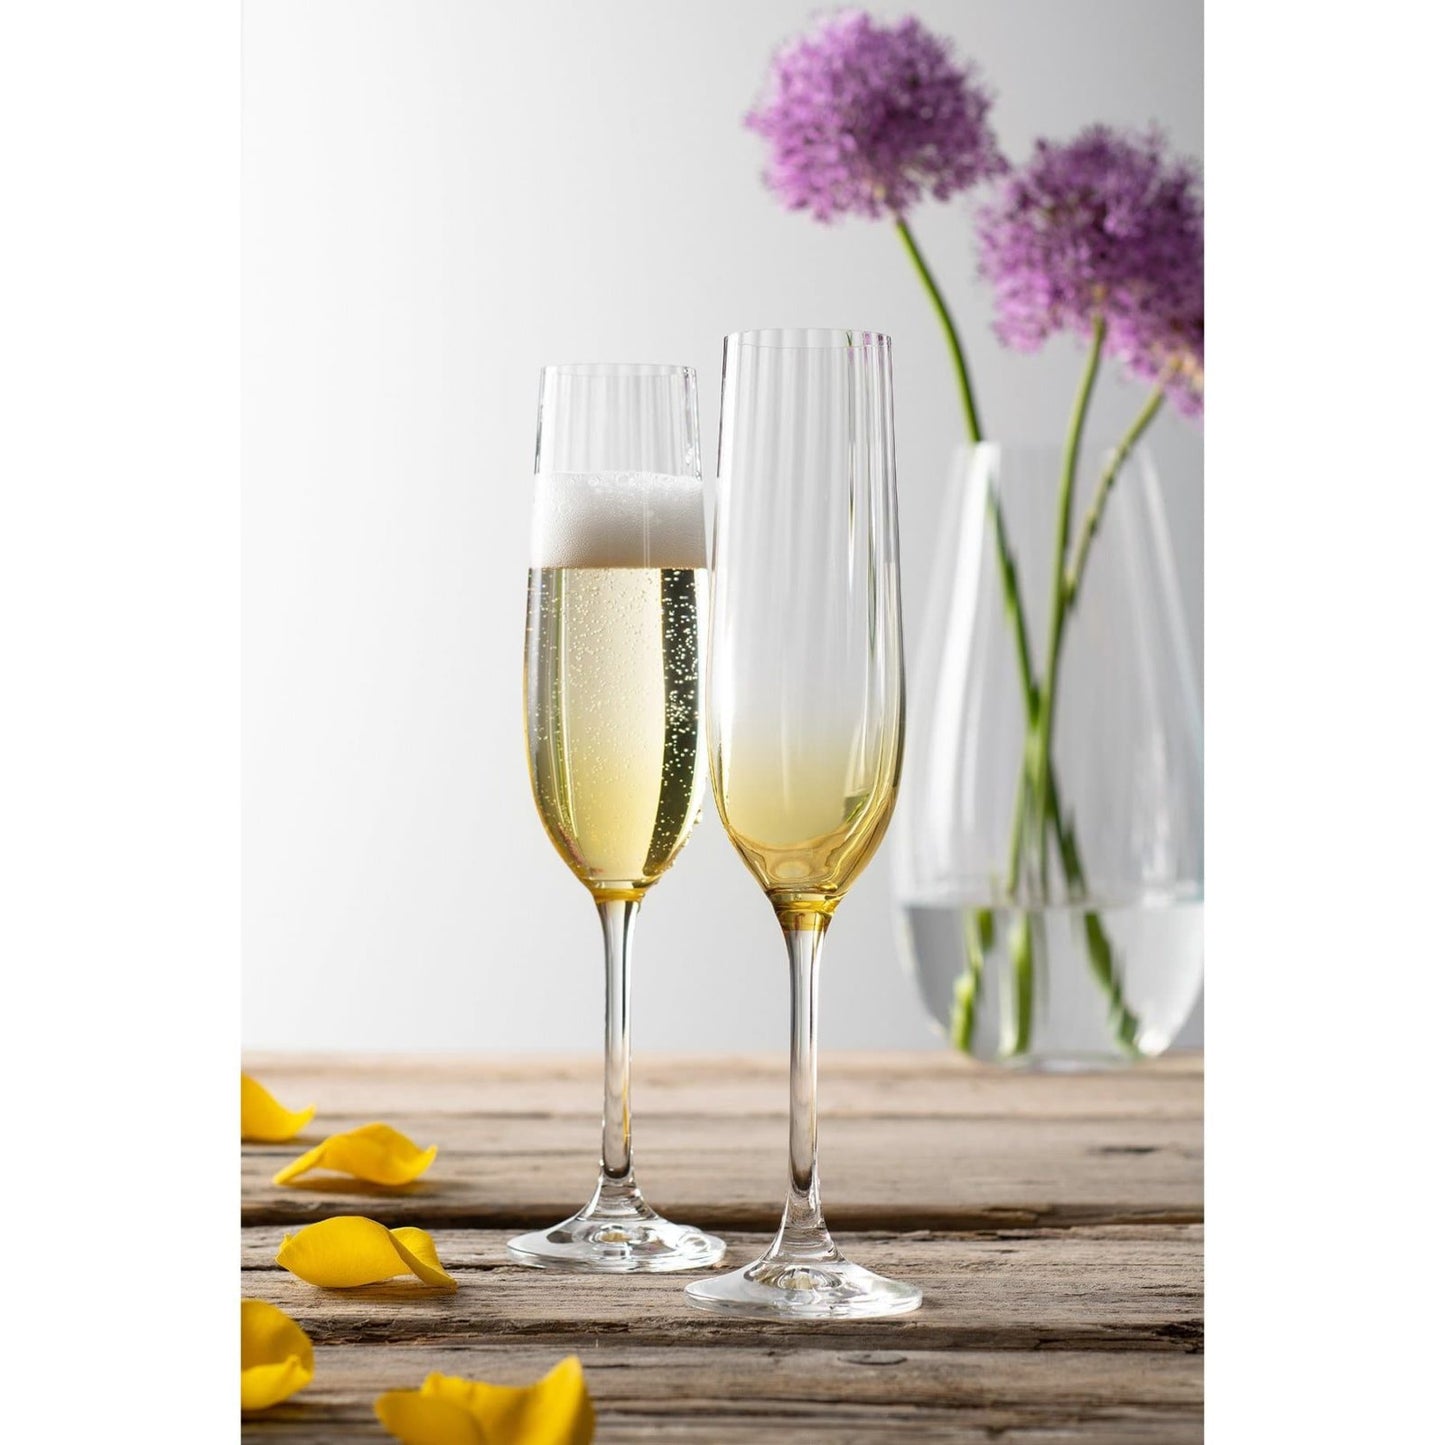 Erne Champagne Flutes set of 2 in Amber